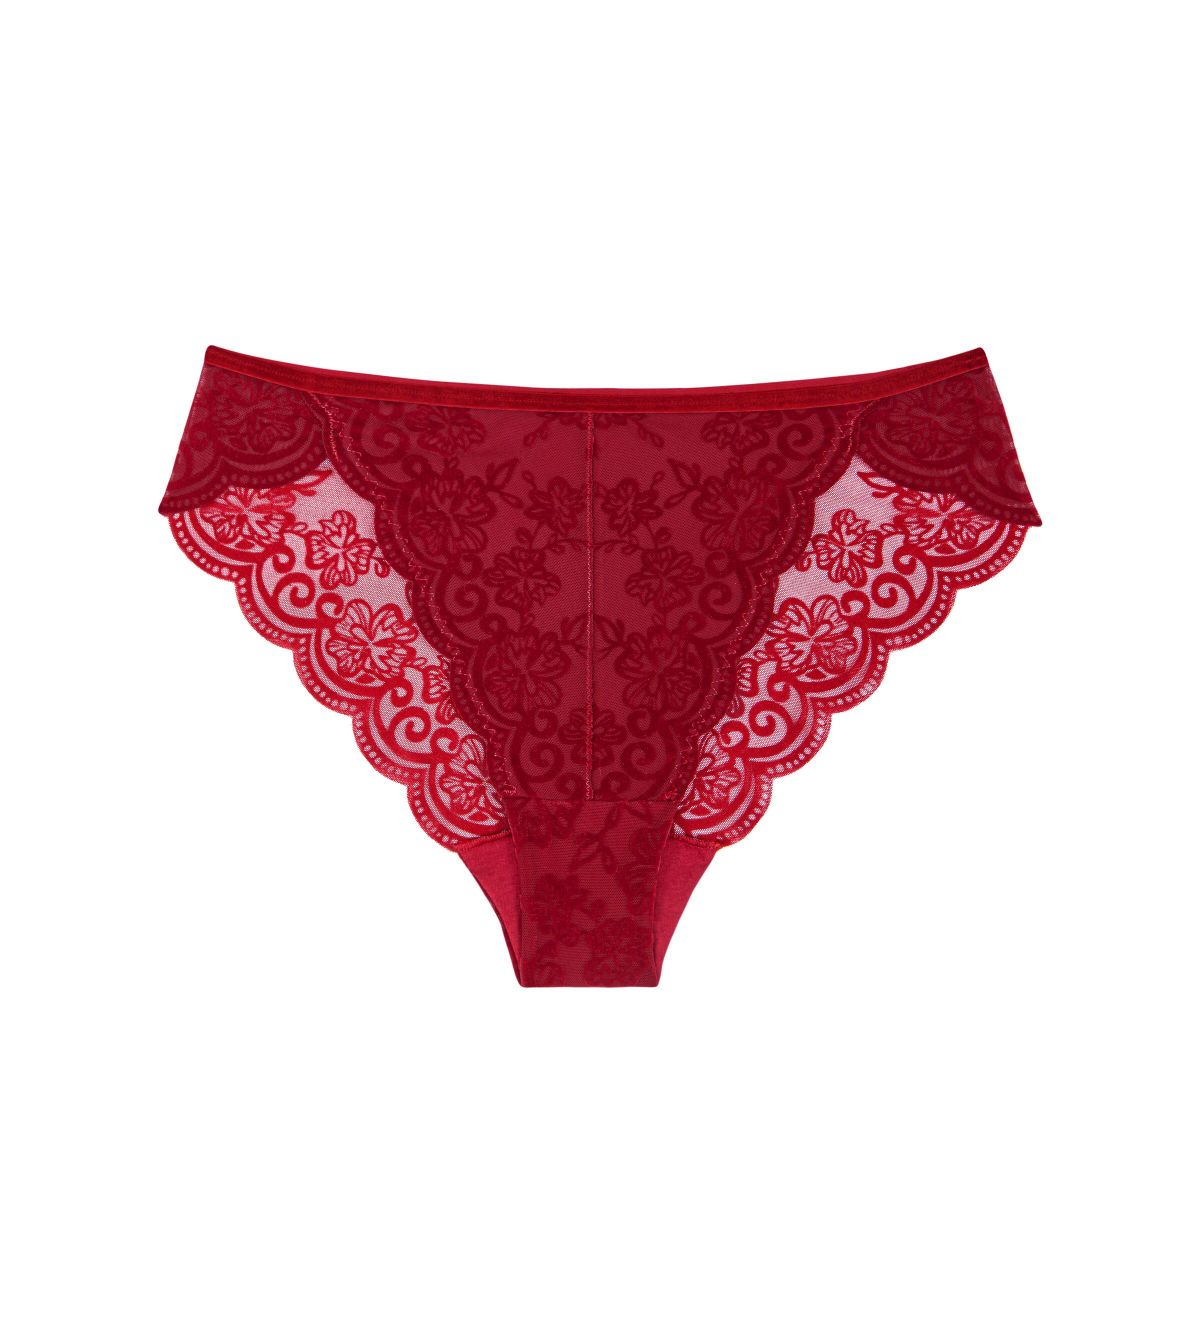 Triumph underwear − women's lingerie, shapewear & more